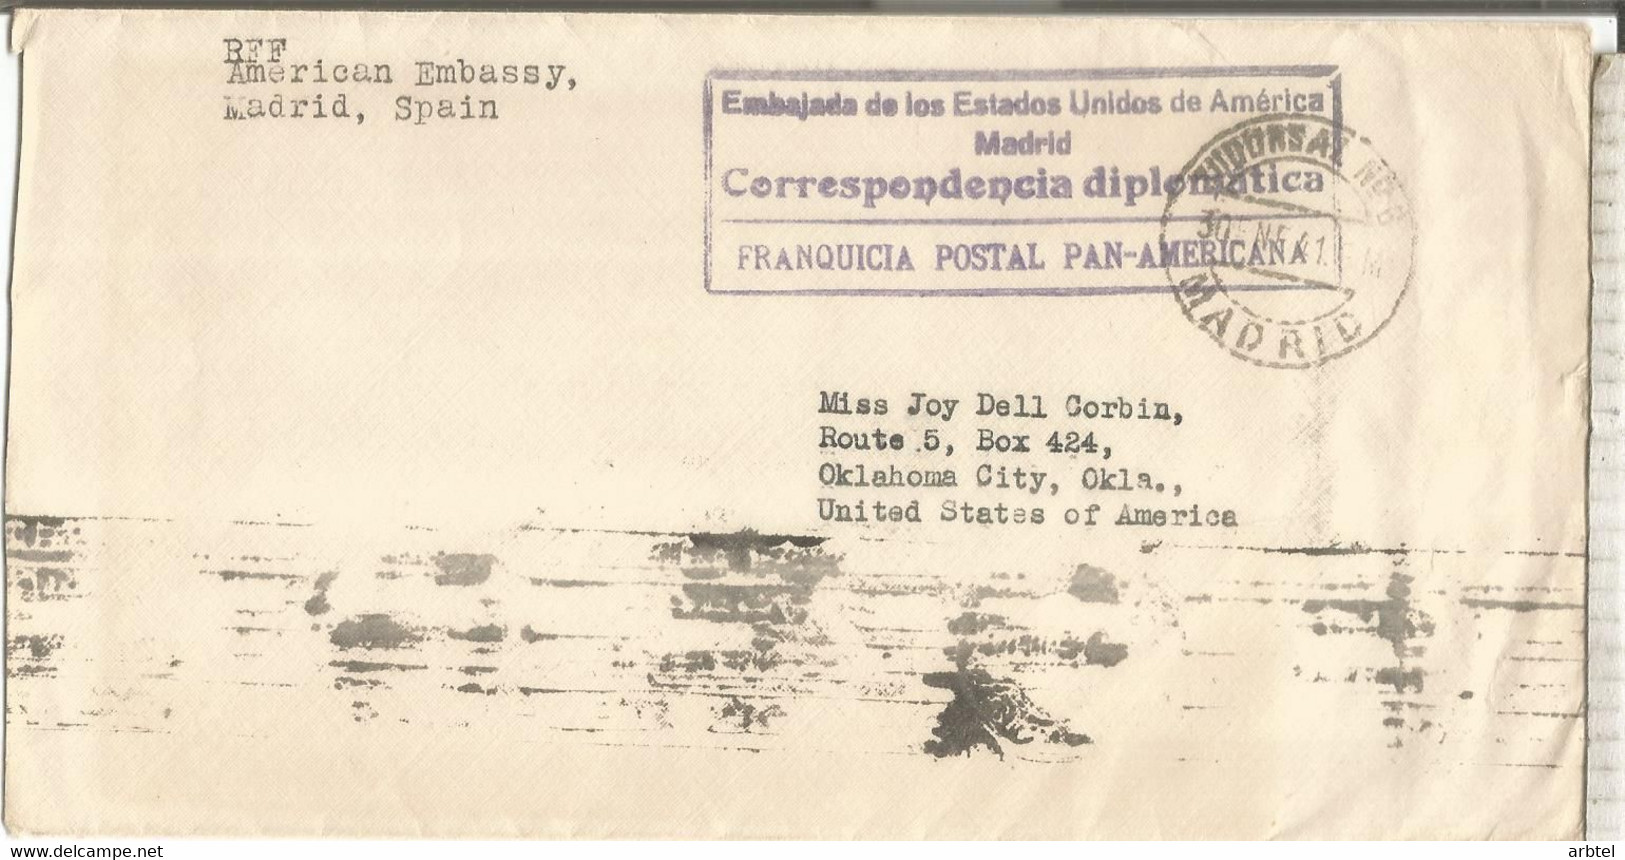 MADRID 1941 FRANQUICIA POSTAL PANAMERICANA EMBAJADA ESTADOS UNIDOS - Franquicia Postal